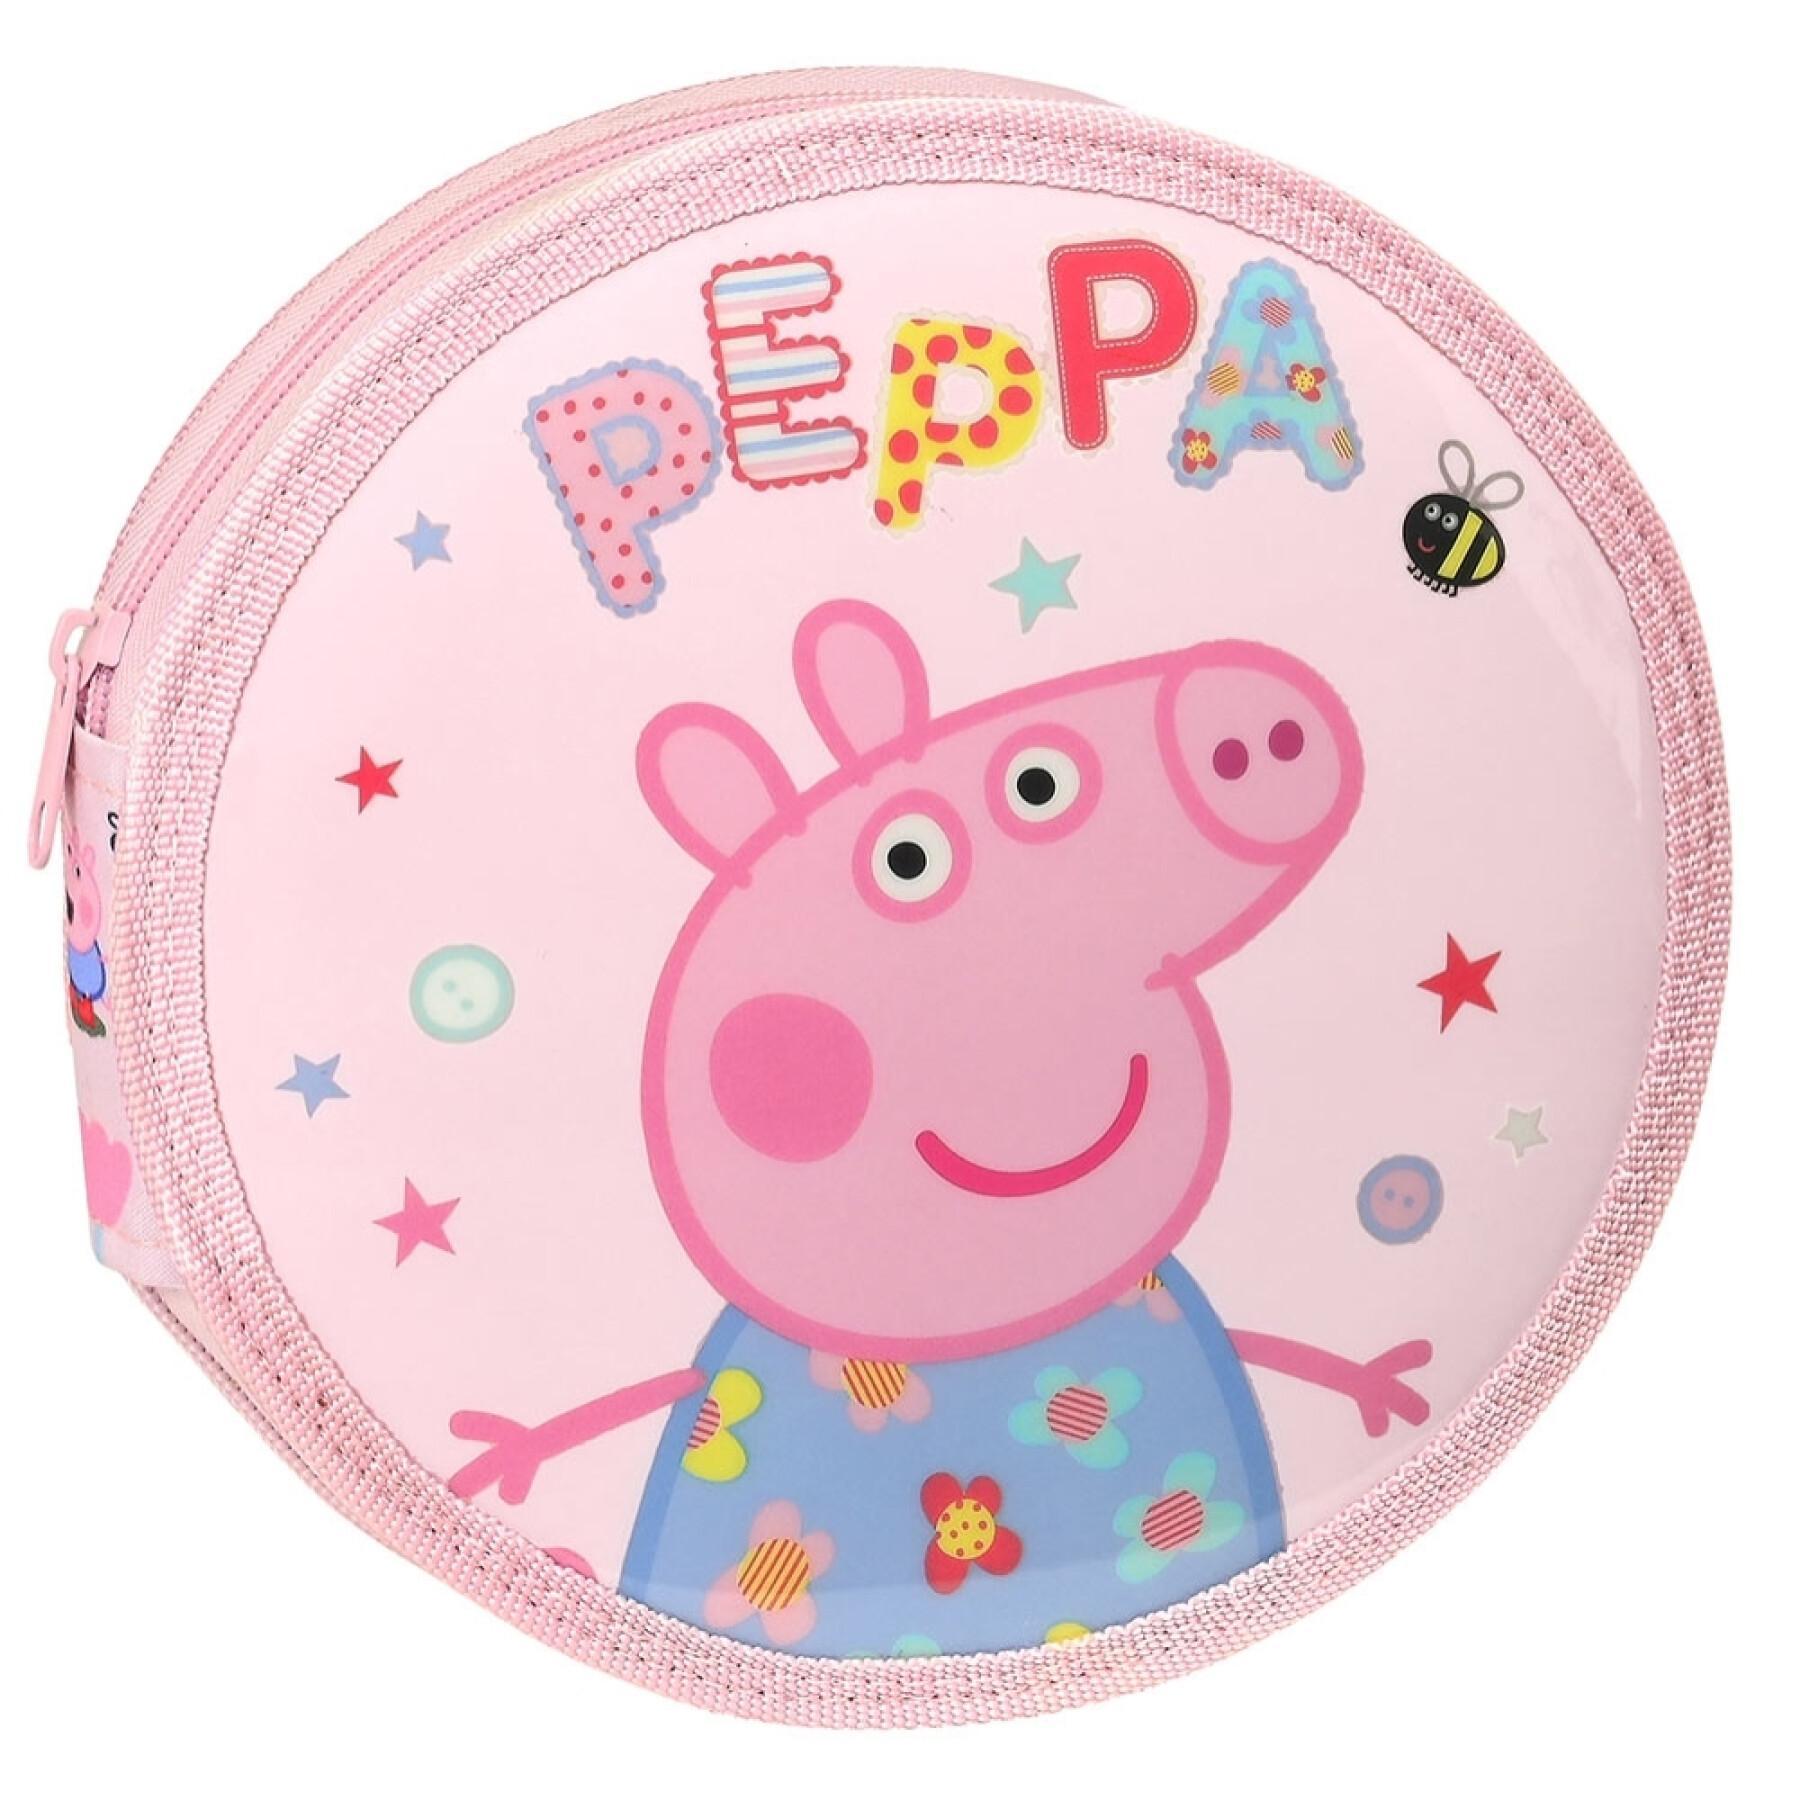 Trousse ronde complète enfant Peppa Pig